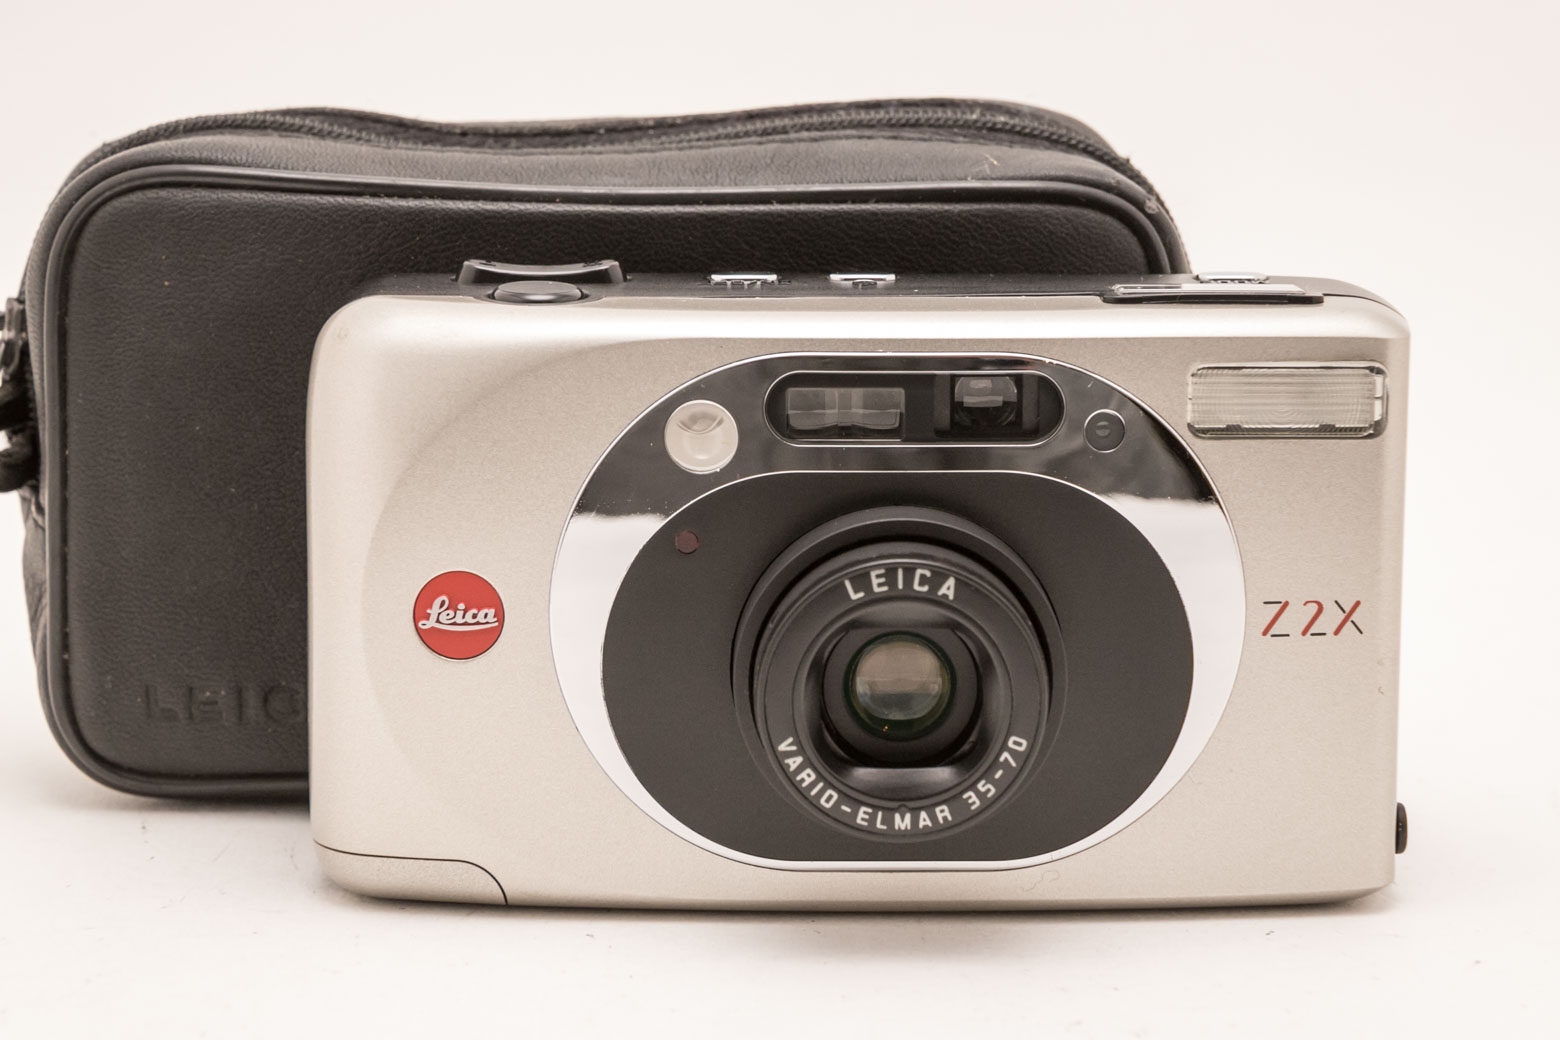 ライカ Leica Z2X コンパクトフィルムカメラ ブラック-